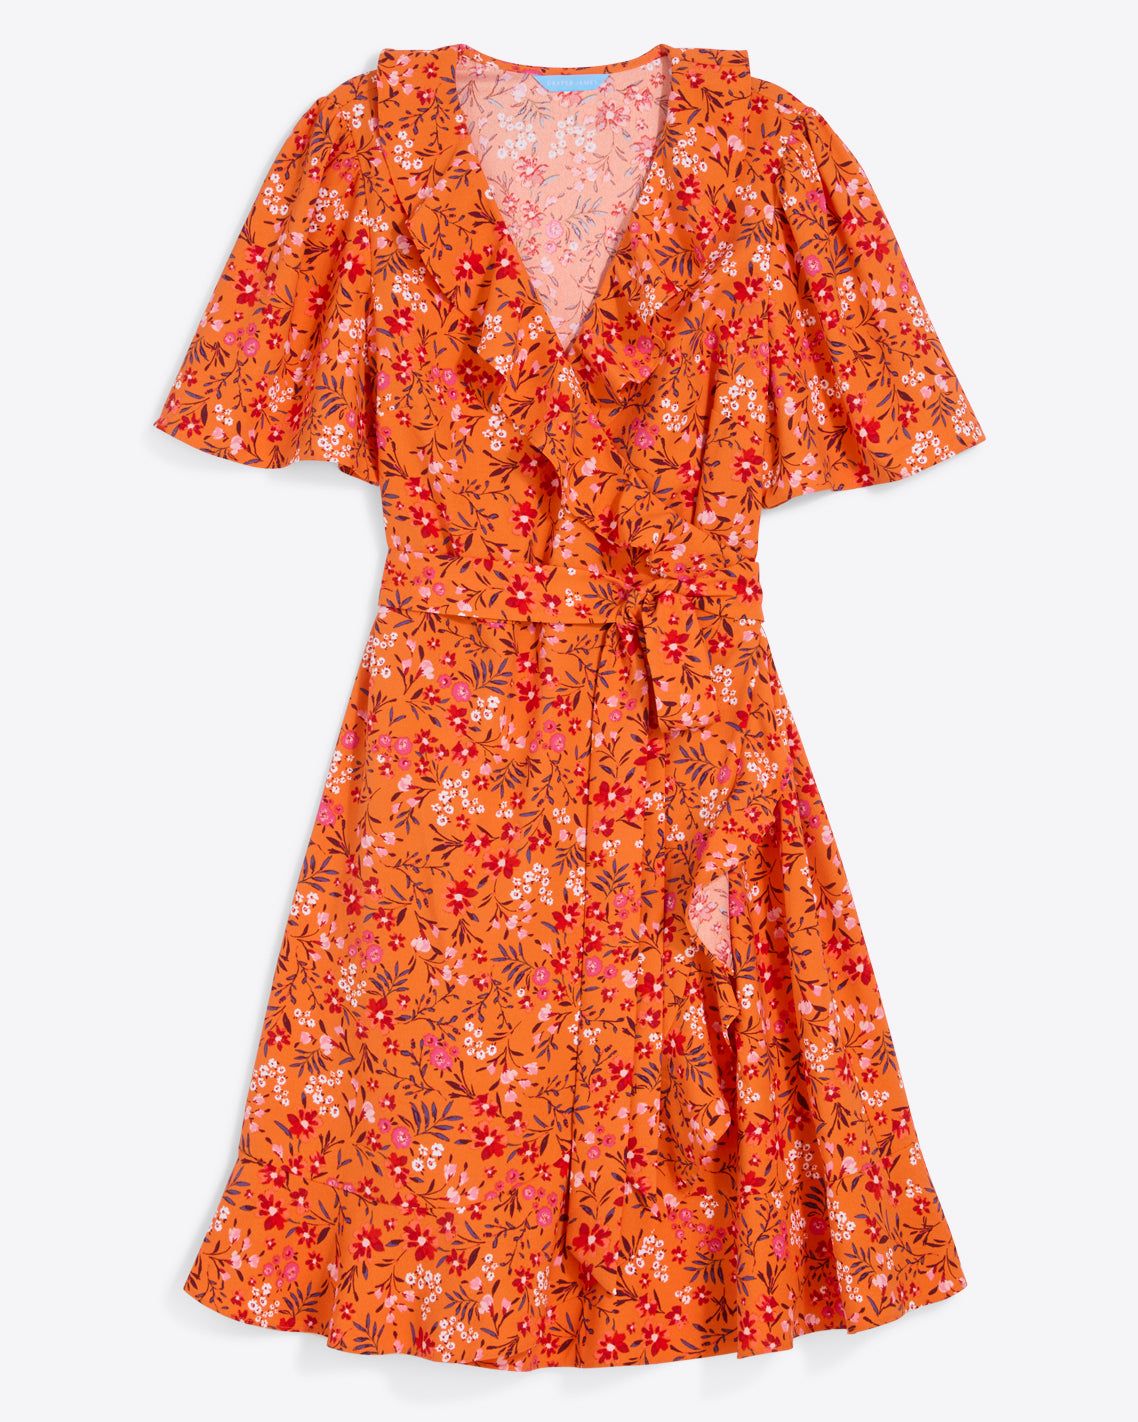 Reba Wrap Dress in Apricot Pansy Floral | Draper James (US)